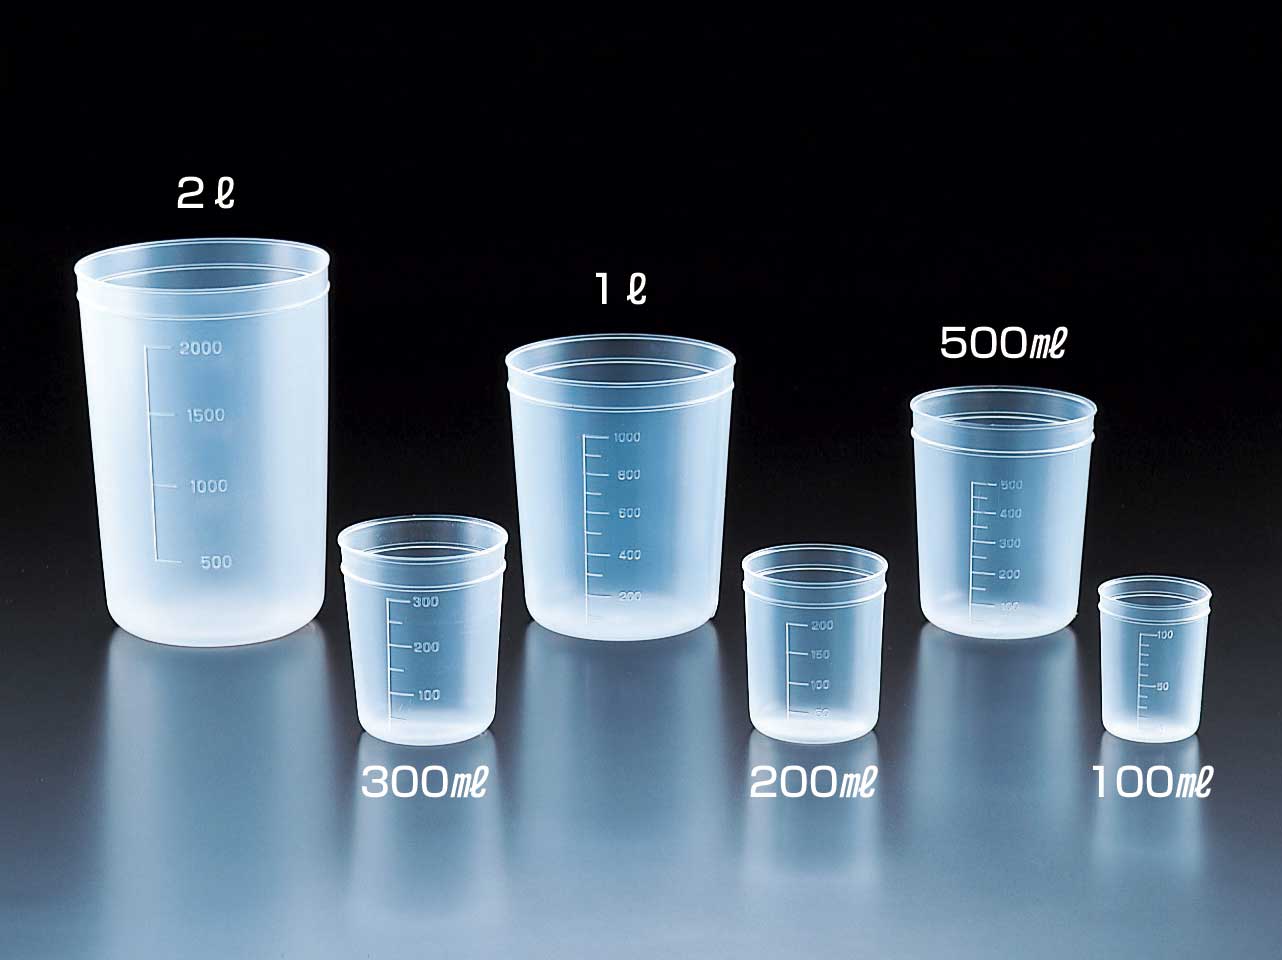 1 3 стакана это сколько воды в стакане фото